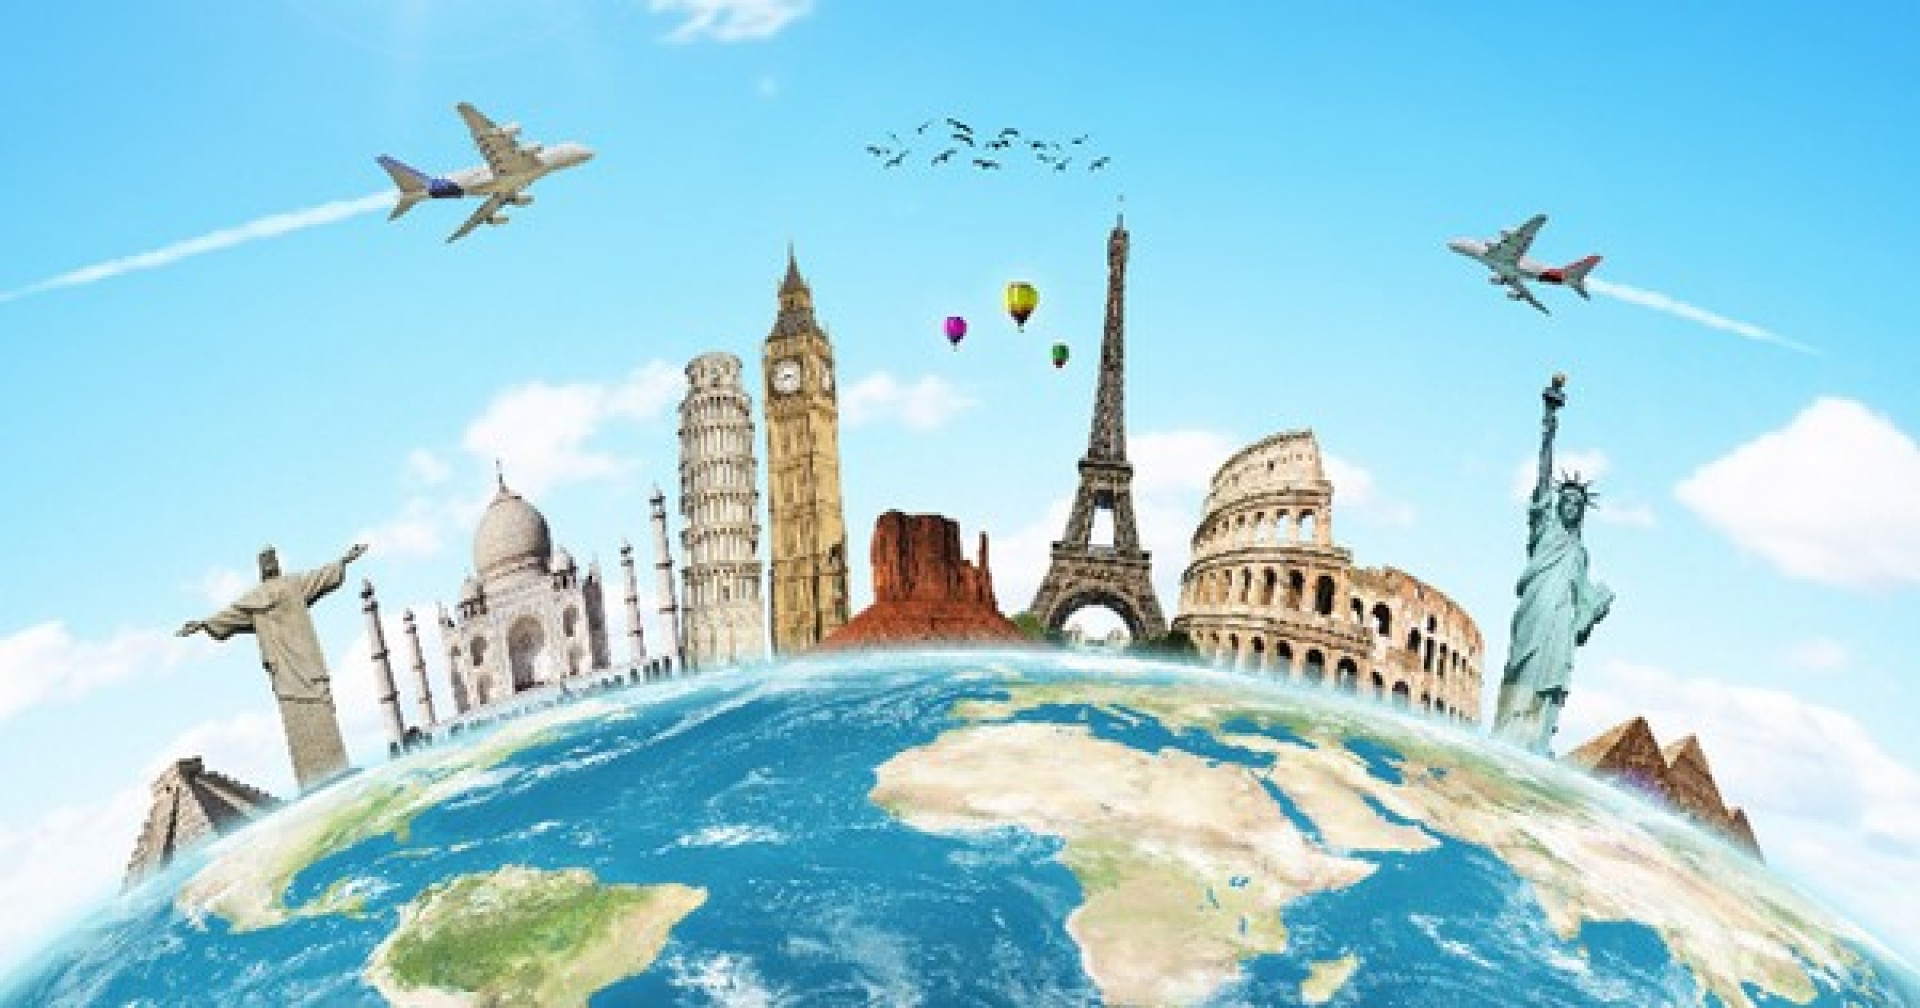 Du lịch thế giới miễn phí với top 5 công việc thú vị